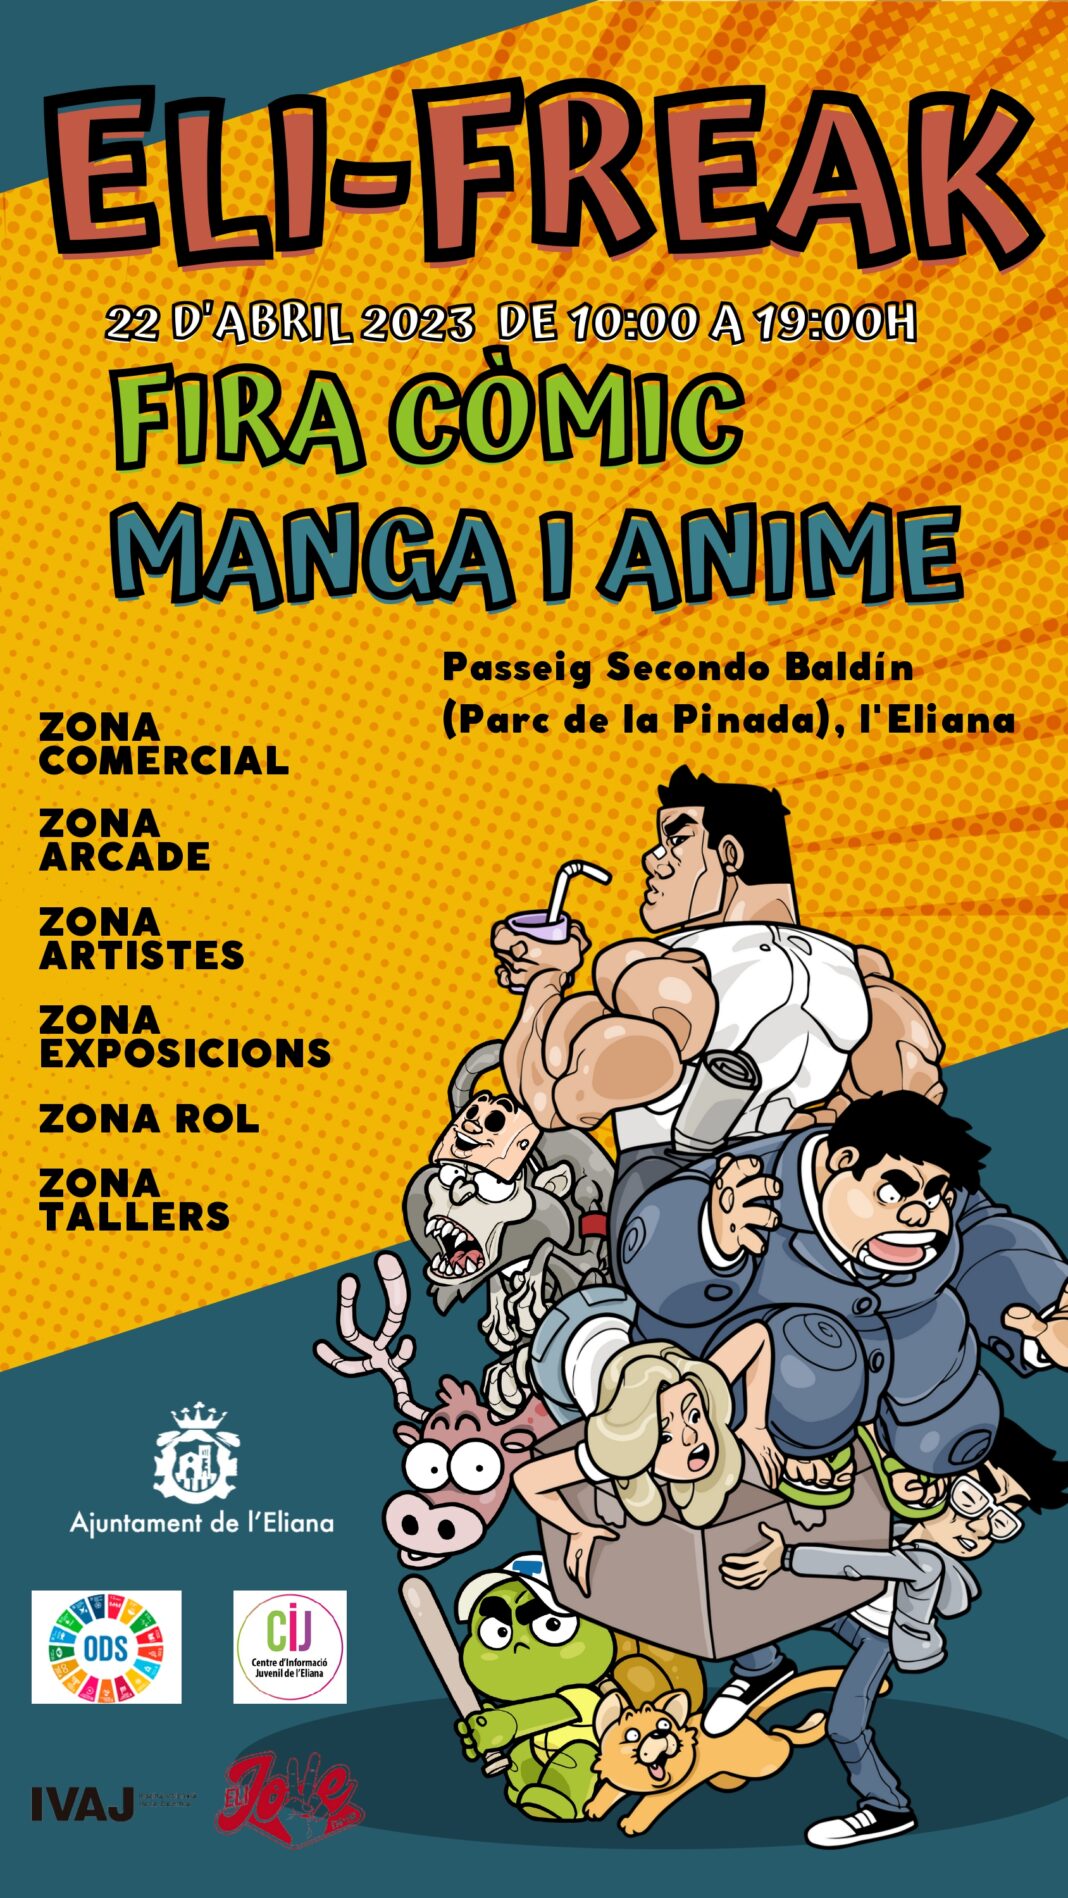 Elifreak congregará a los amantes del manga y del cómic en l'Eliana el próximo 22 de abril